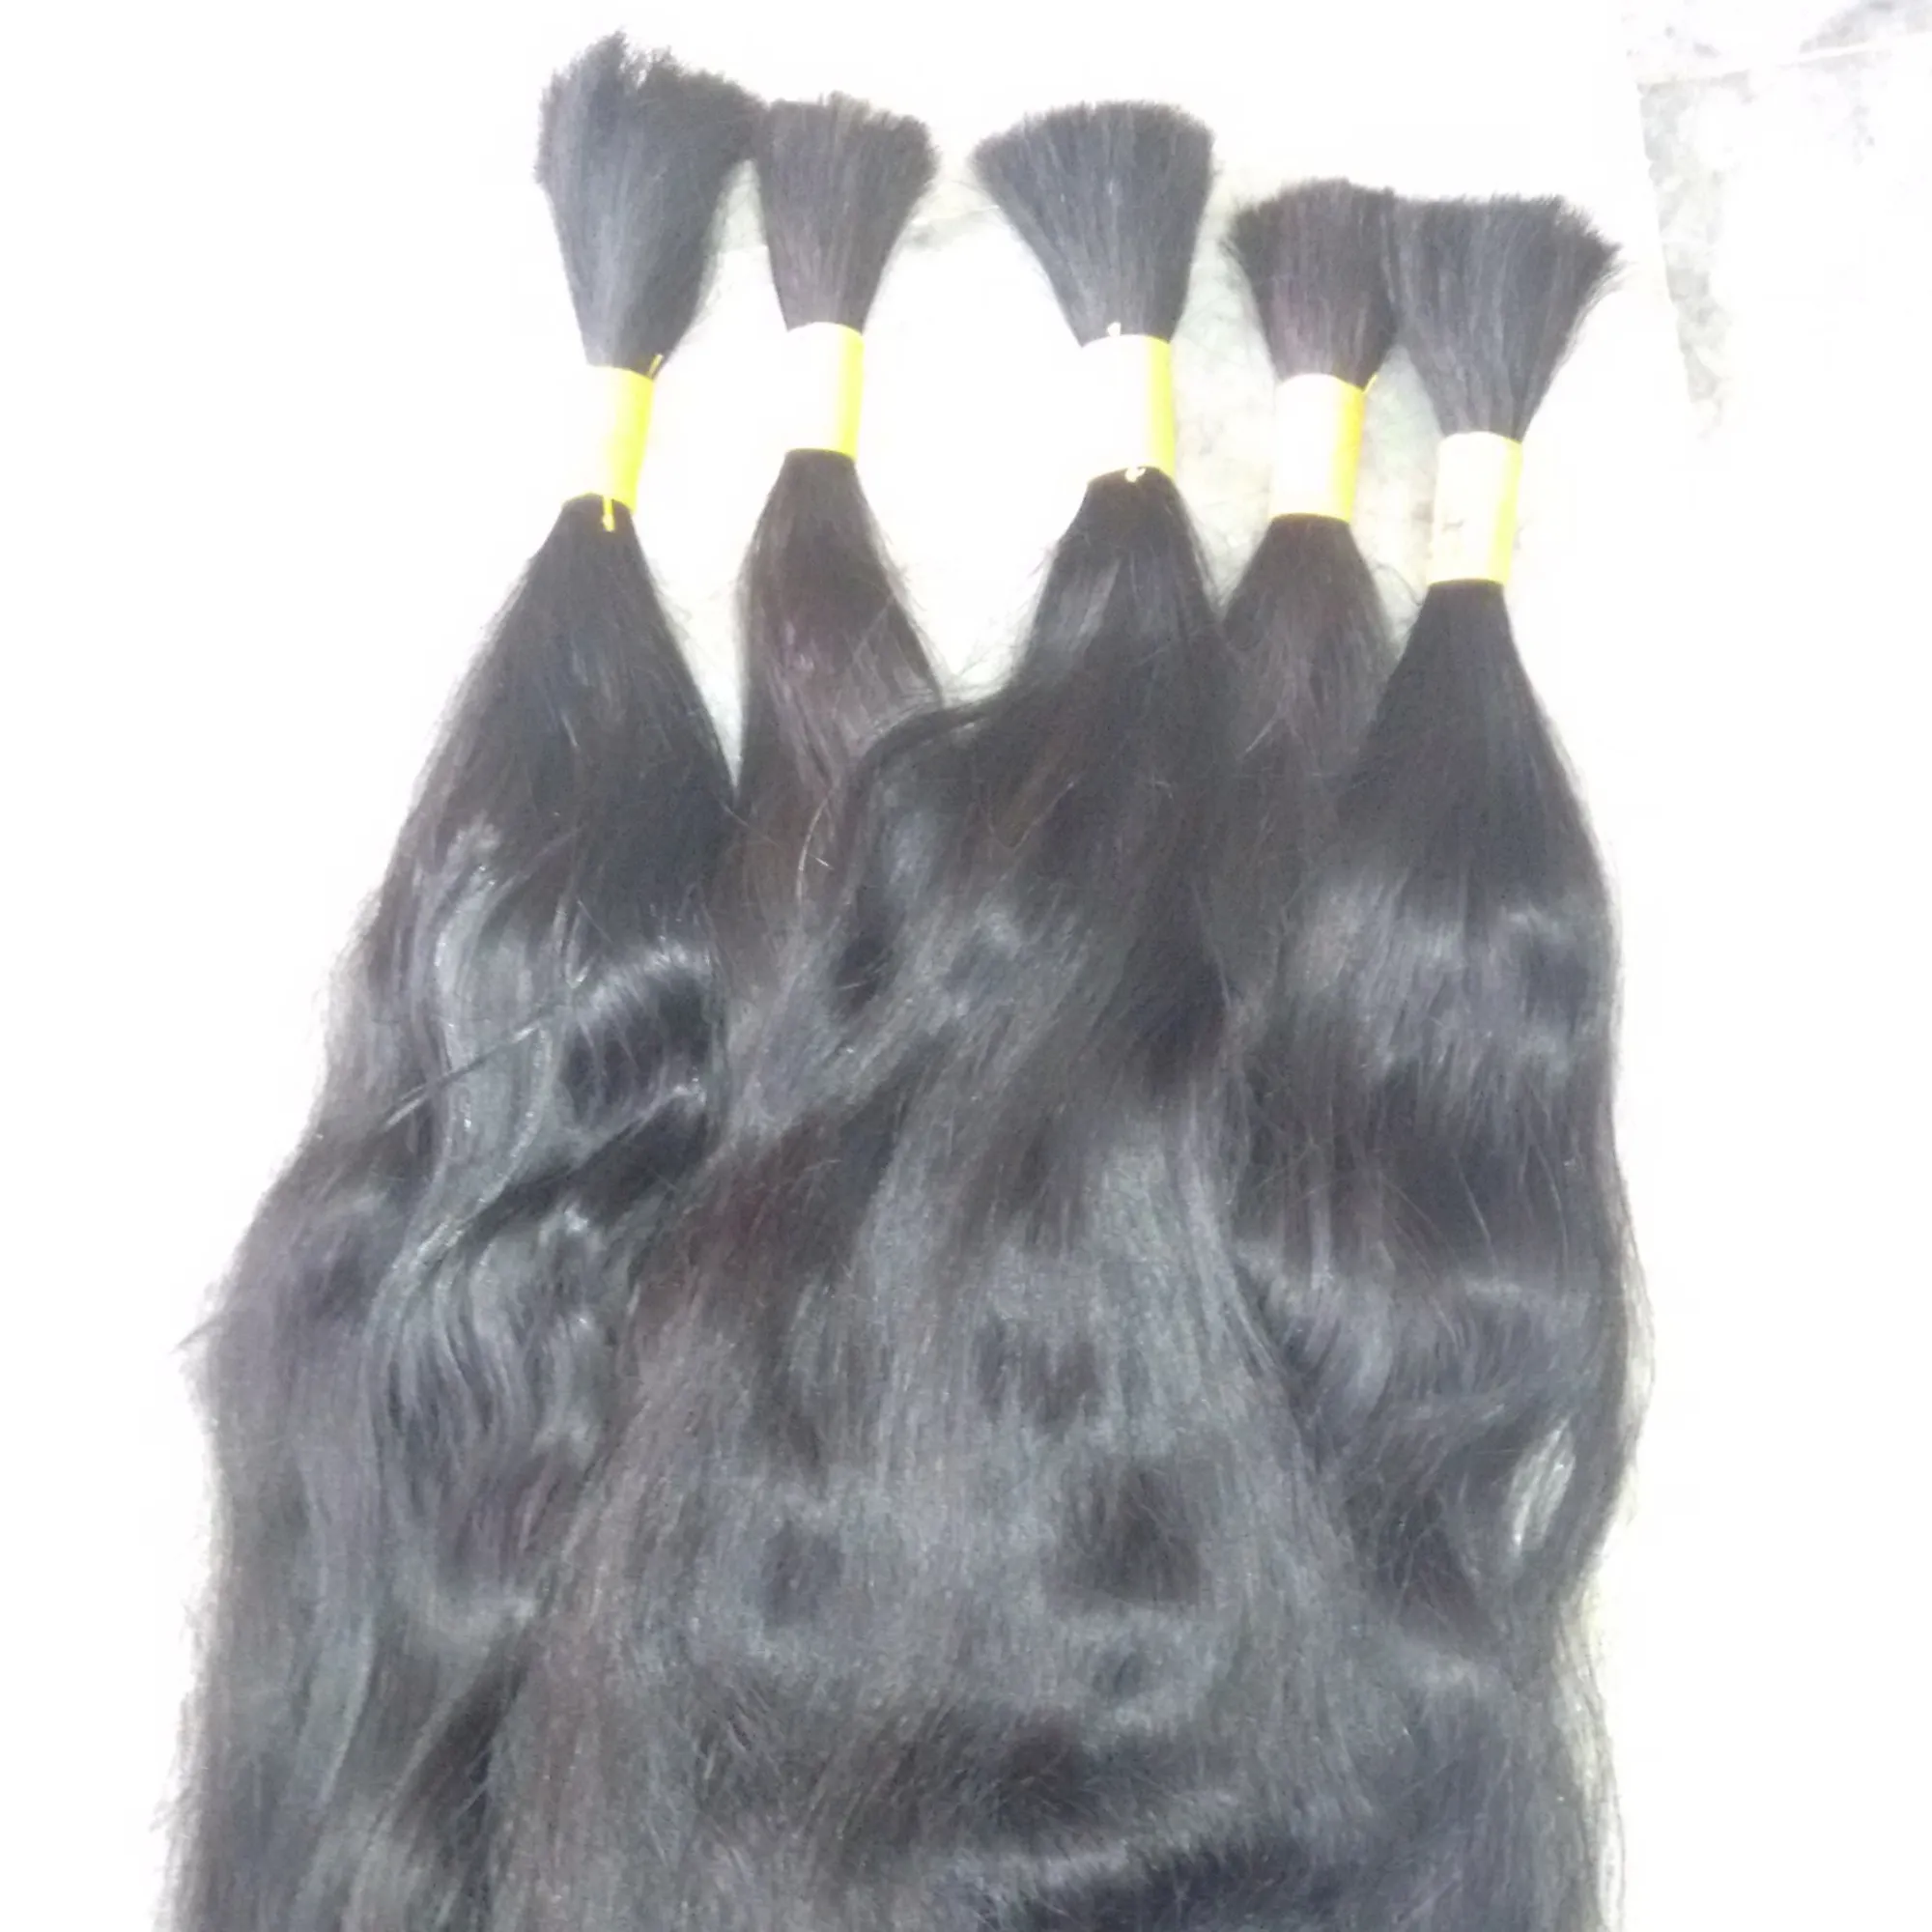 Templo melhor qualidade cabelos de 100% não processados todo o preço de venda virgin indiana remy cabelo humano. O cabelo do donor de alta qualidade.